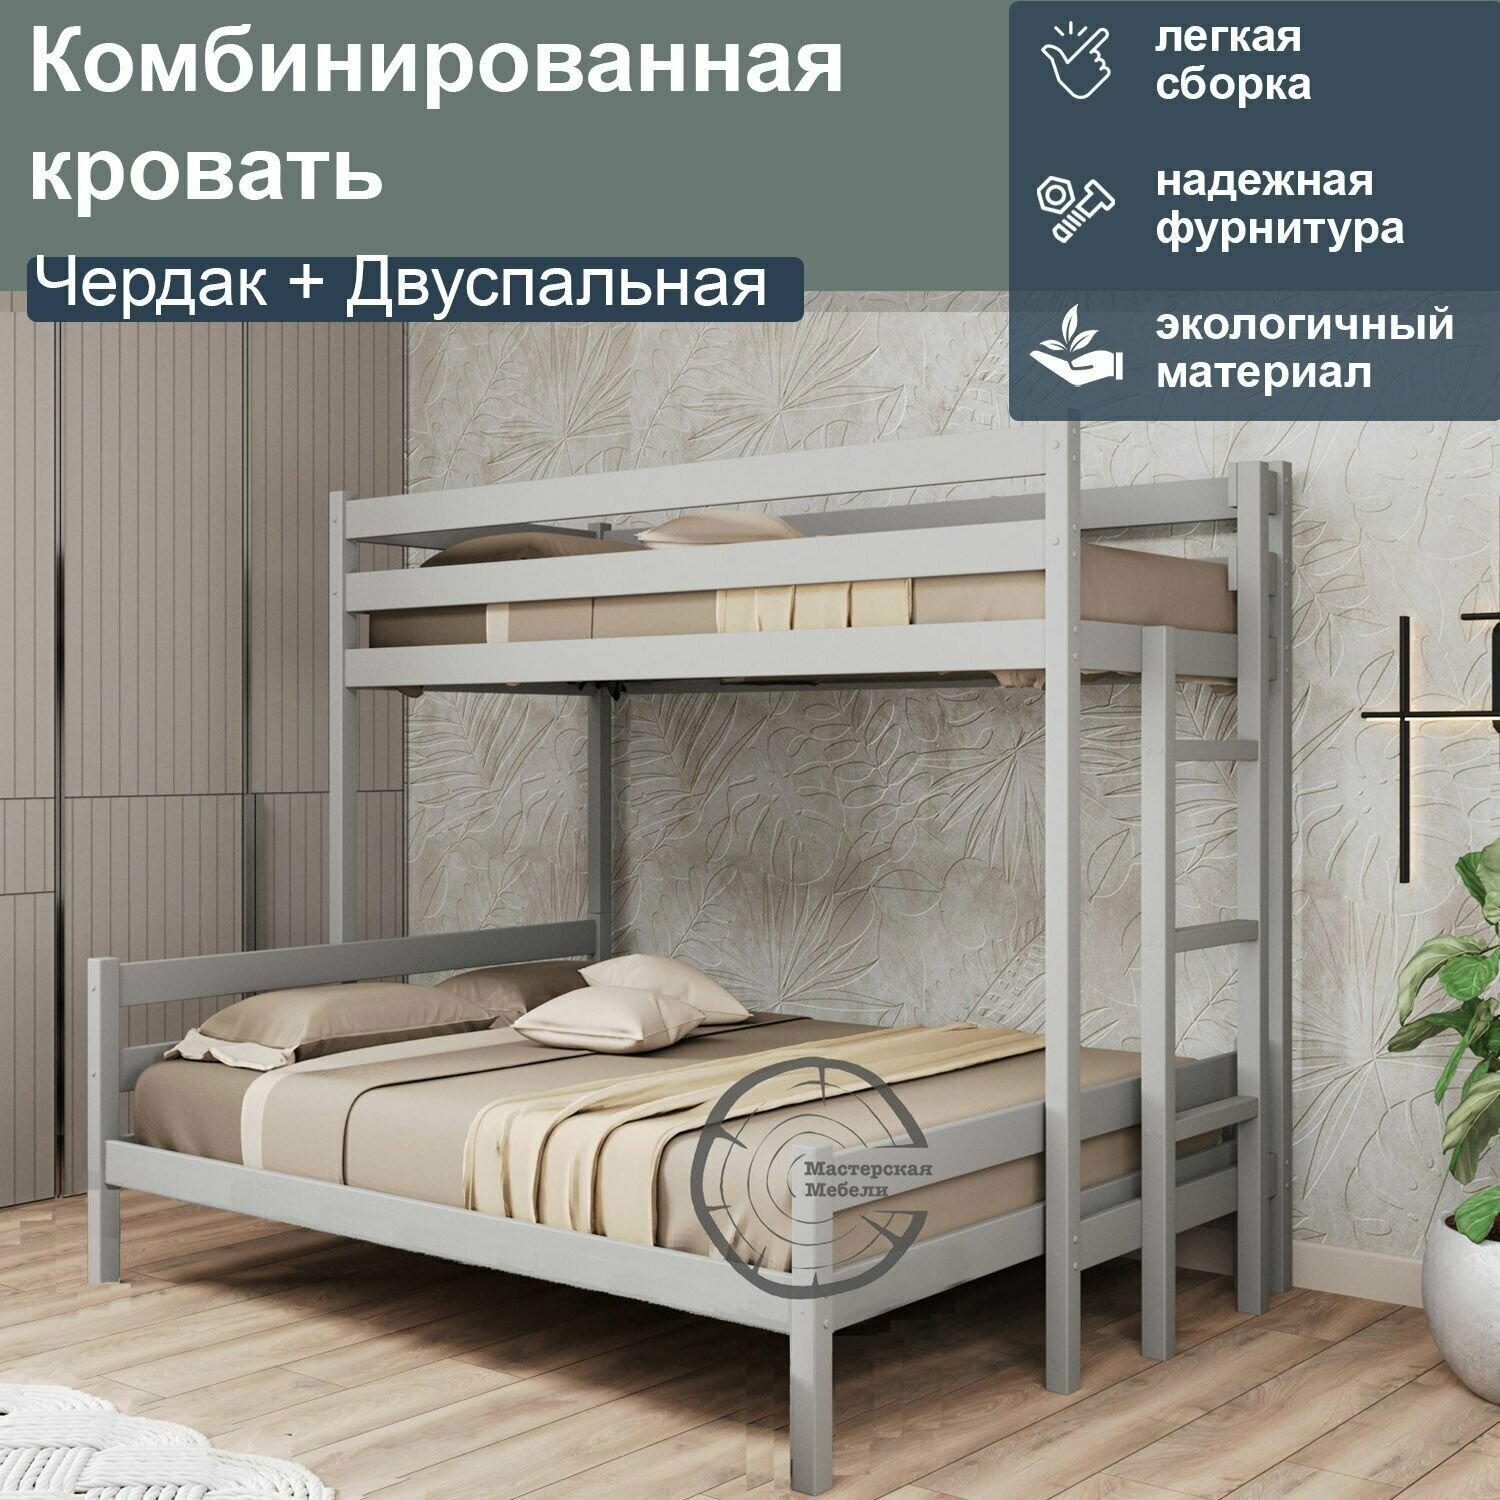 Кровать комбинированная Чердак + Двуспальная, 160, серый